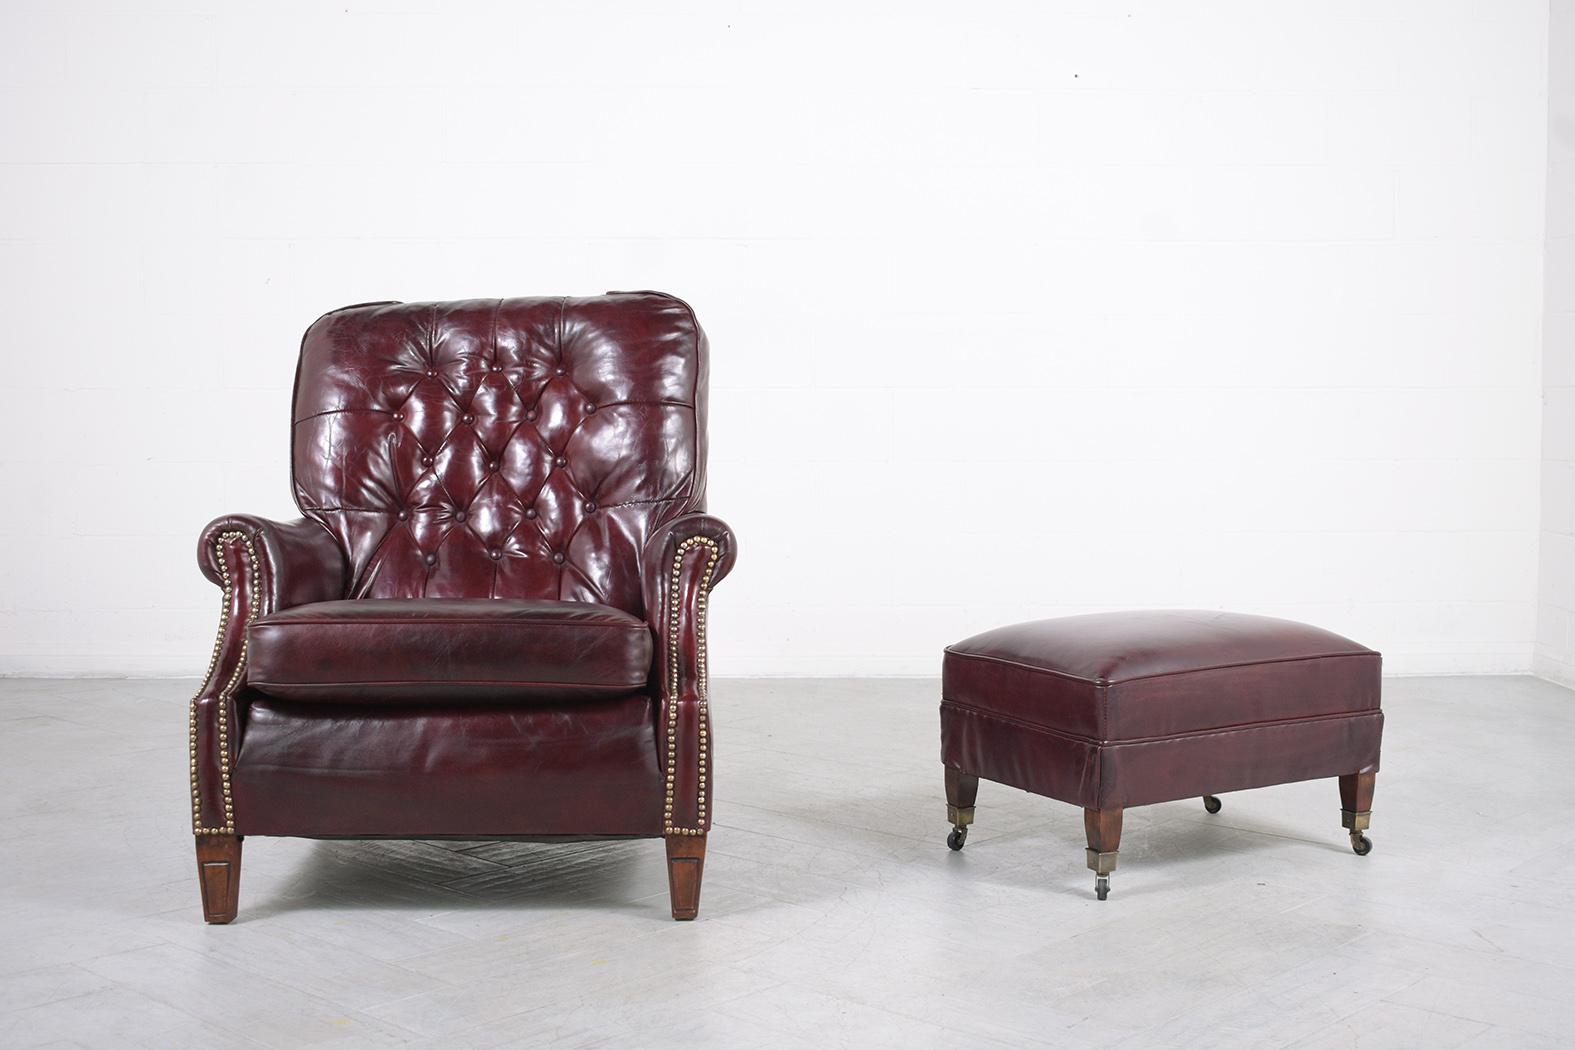 Tauchen Sie ein in die Opulenz der frühen 1900er Jahre mit unserem antiken englischen Chesterfield Lounge Chair, meisterhaft handgefertigt aus hochwertigem Leder und sorgfältig restauriert von unserem Team von erfahrenen Handwerkern. Dieser Stuhl